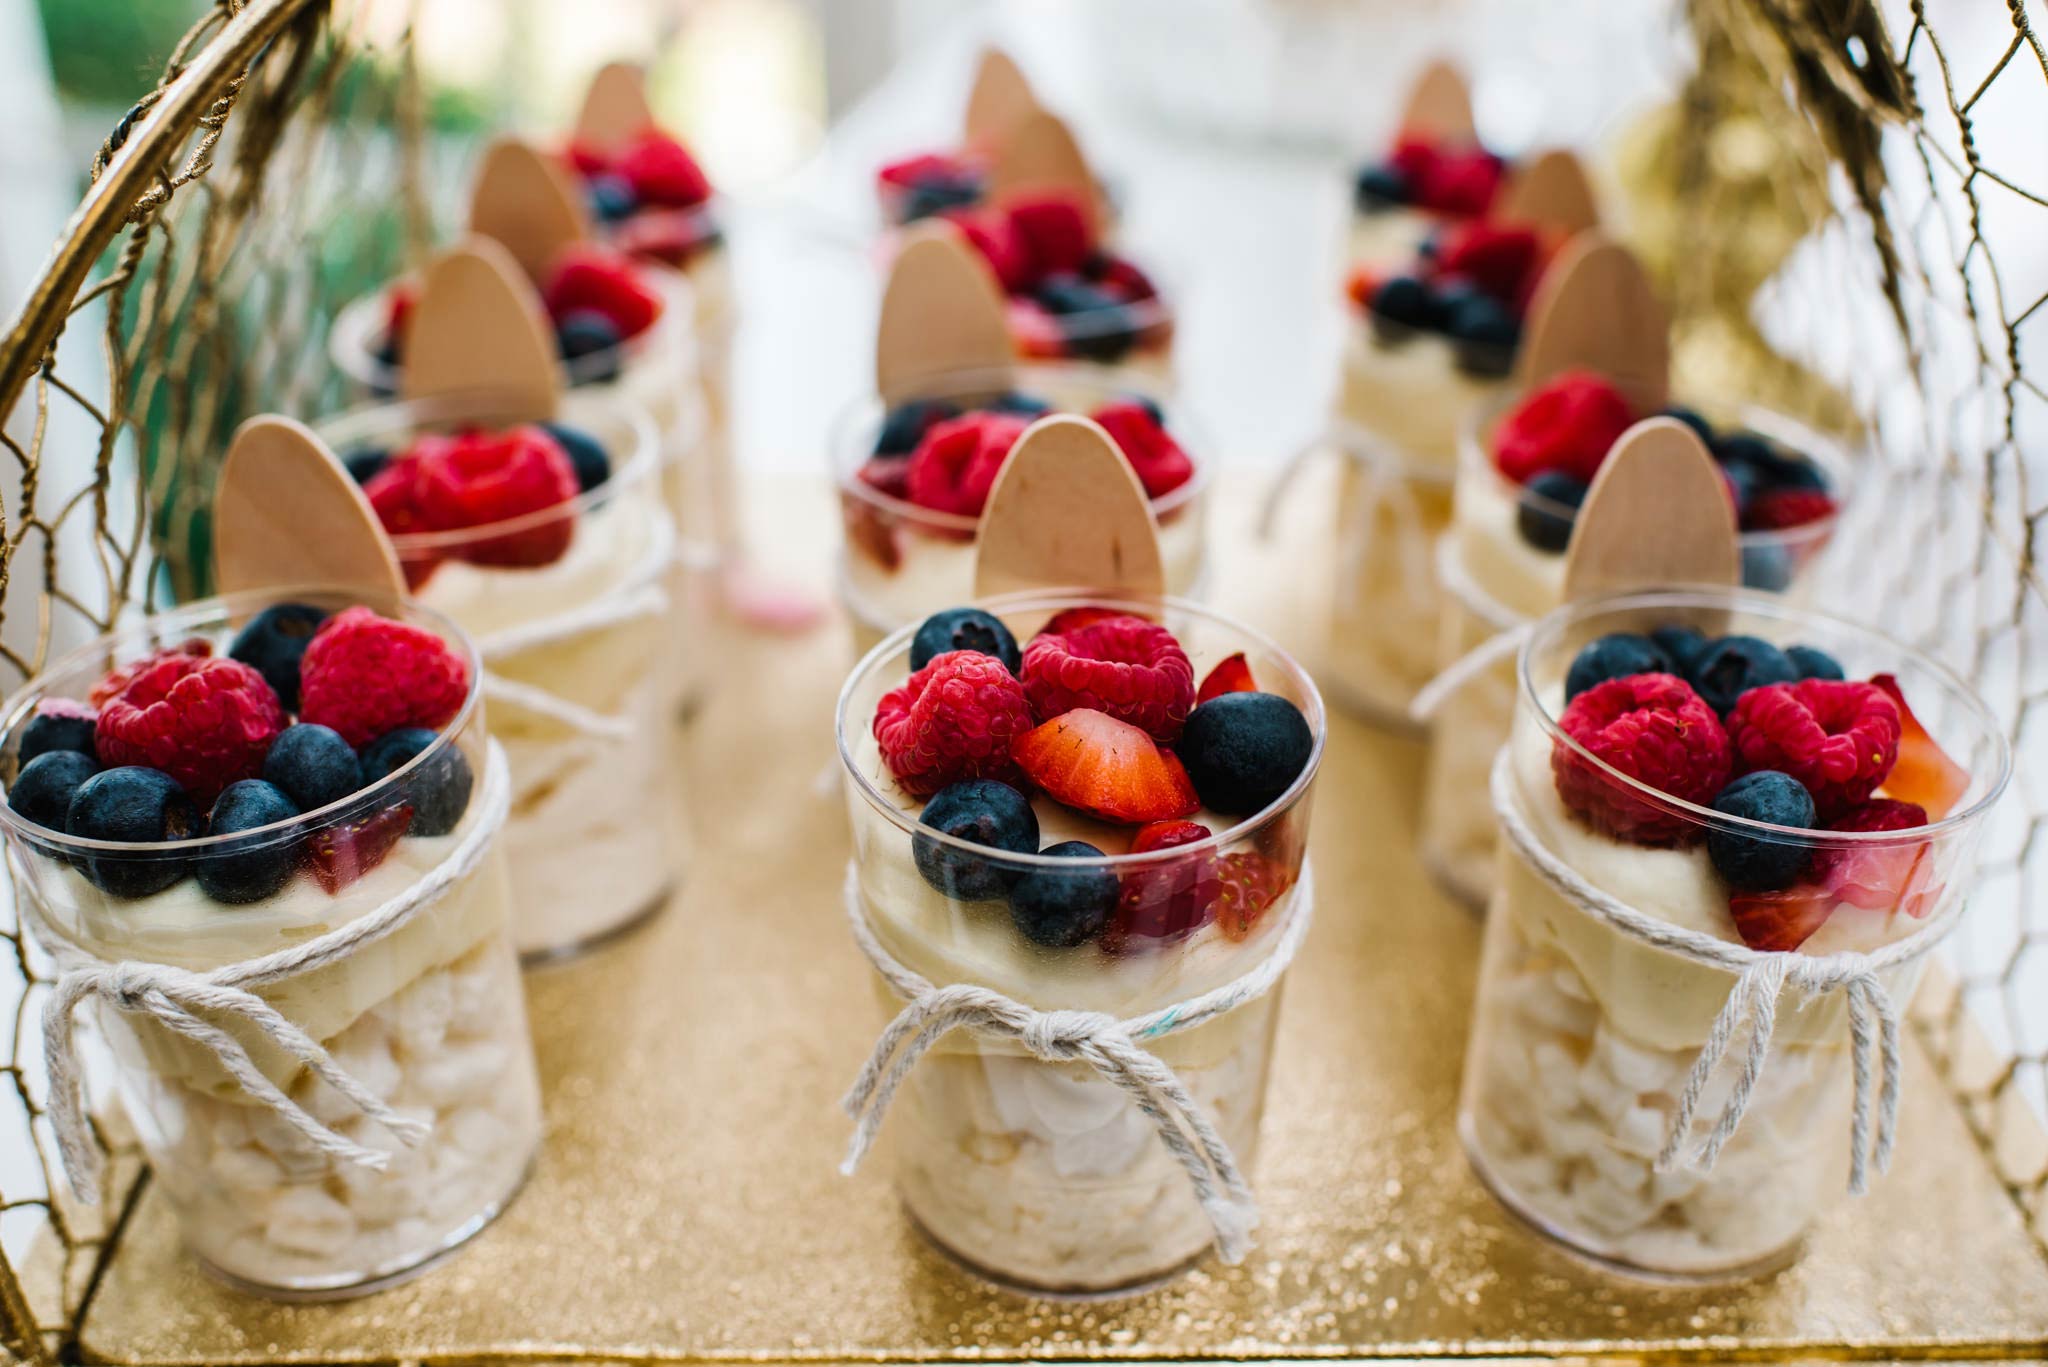 Fruit desserts at Oatlands House christening reception